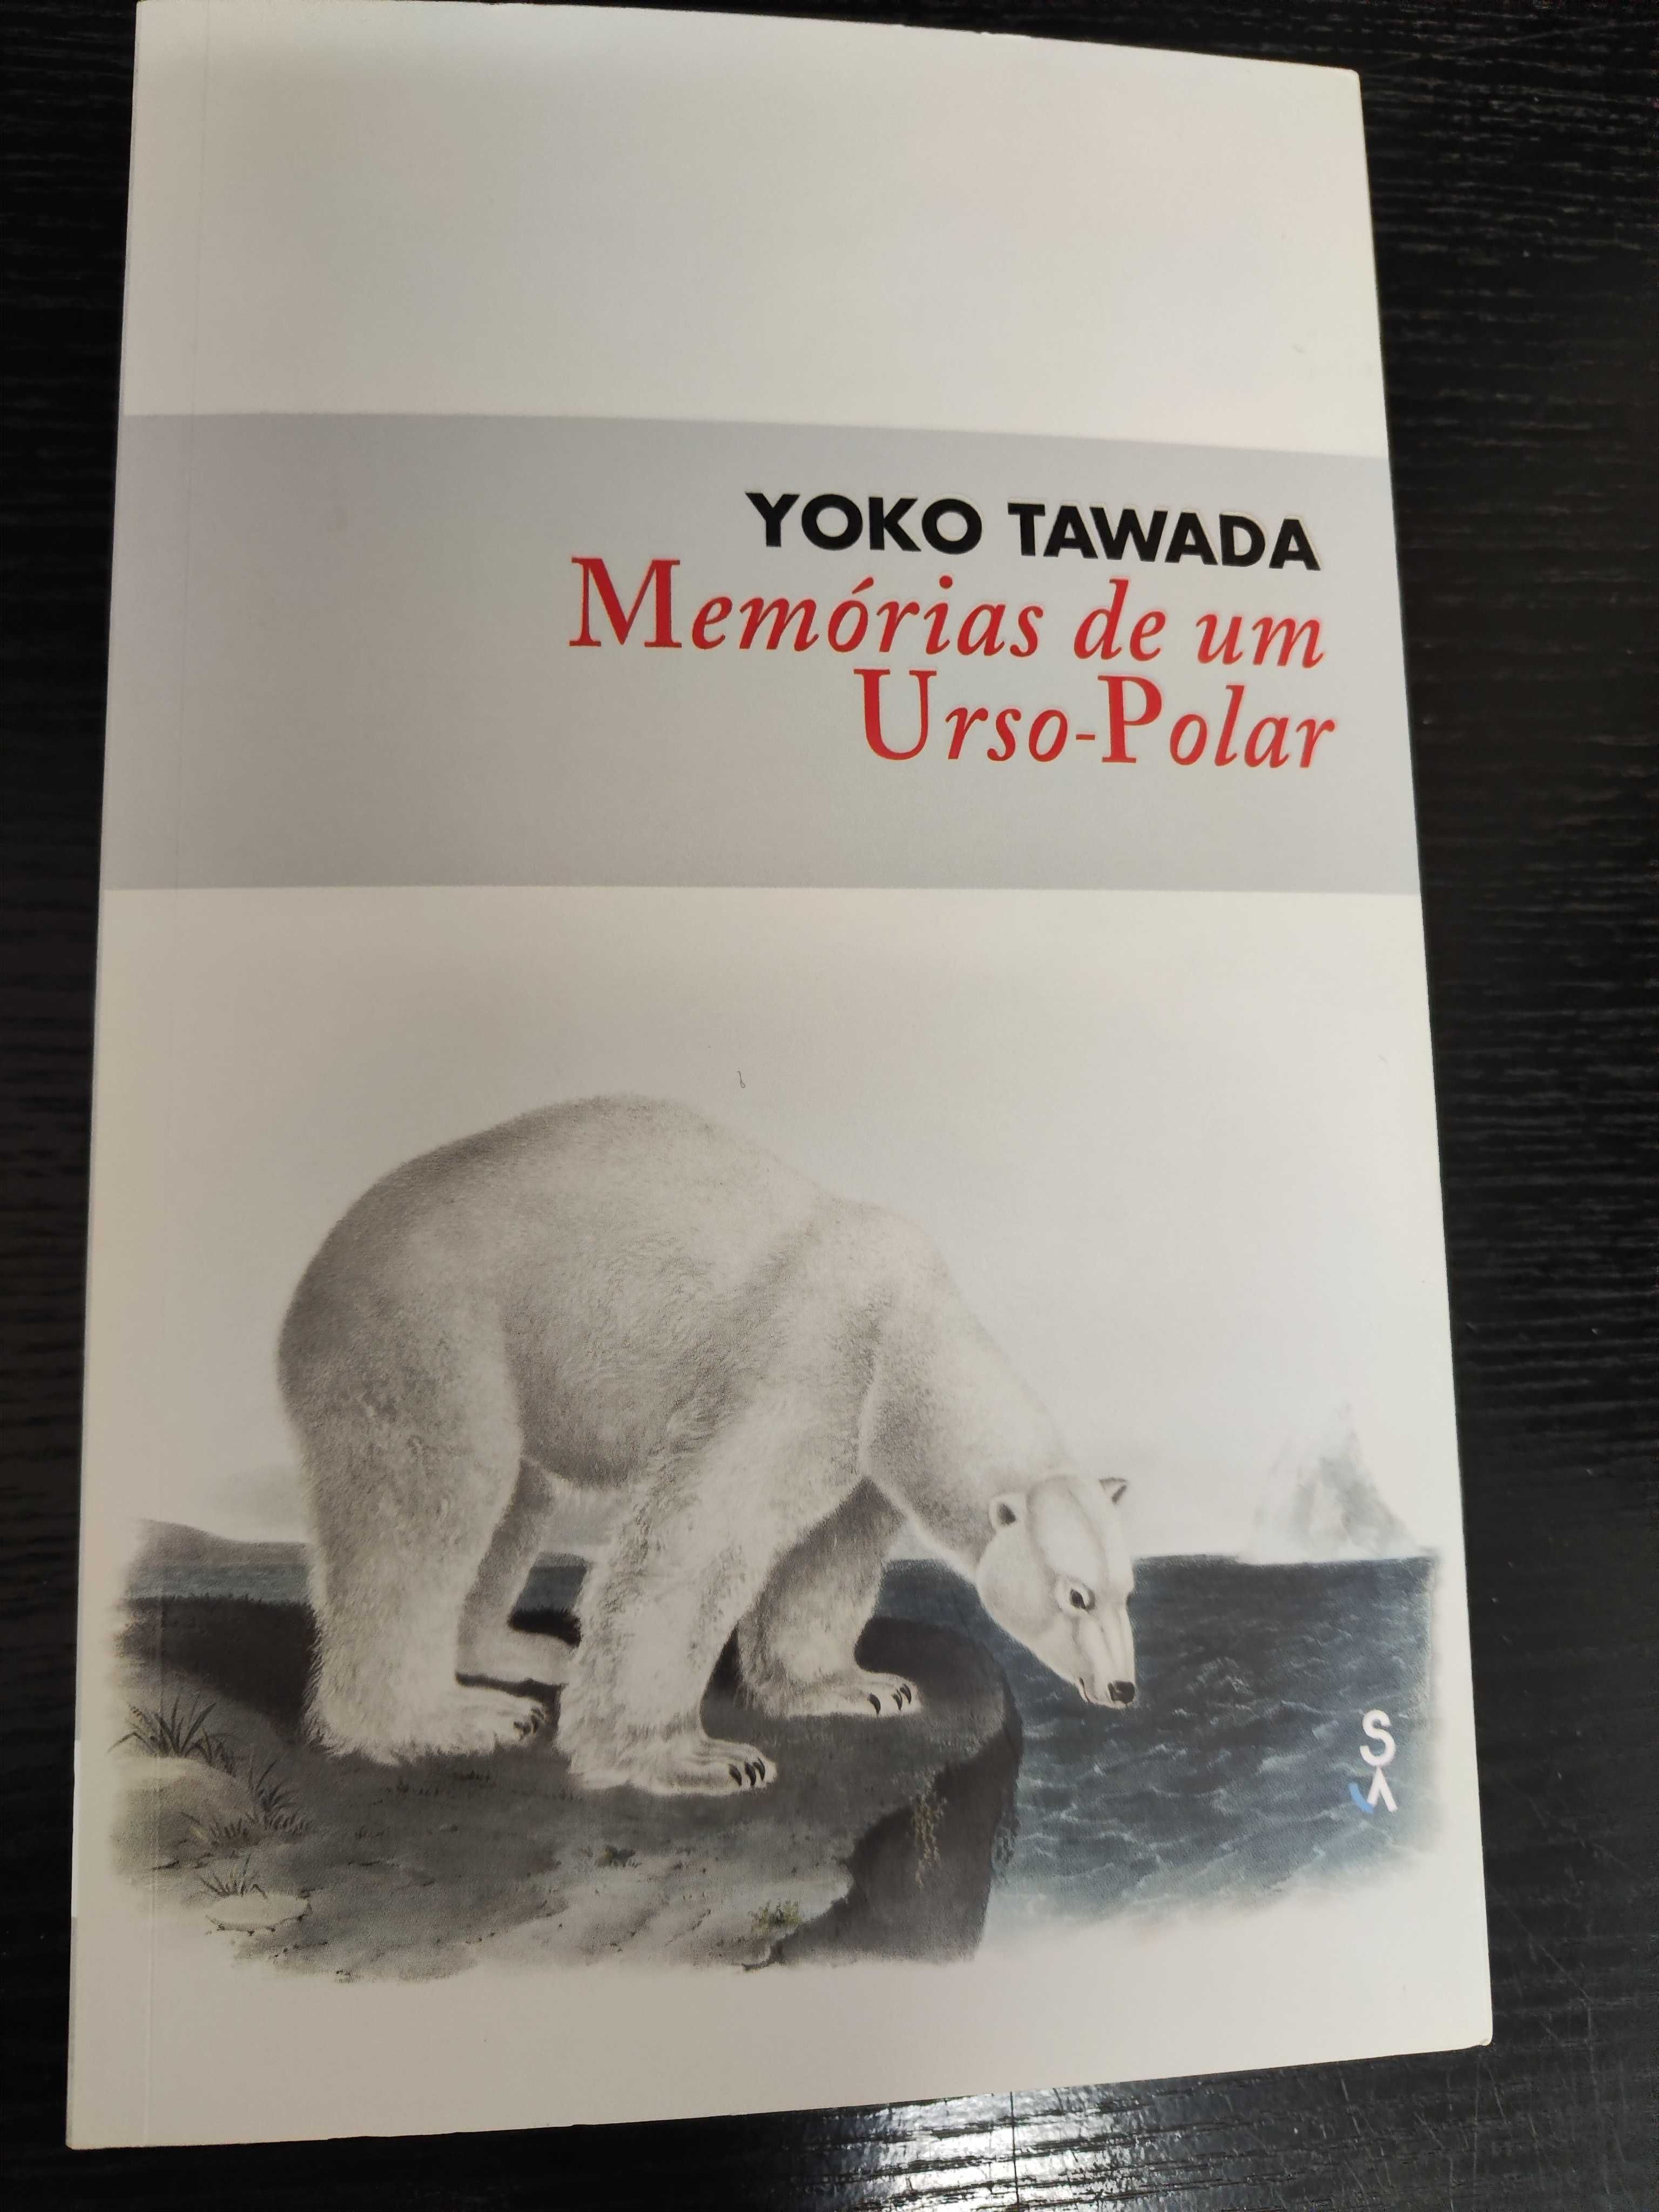 Memórias de um Urso-Polar de Yoko Tawada